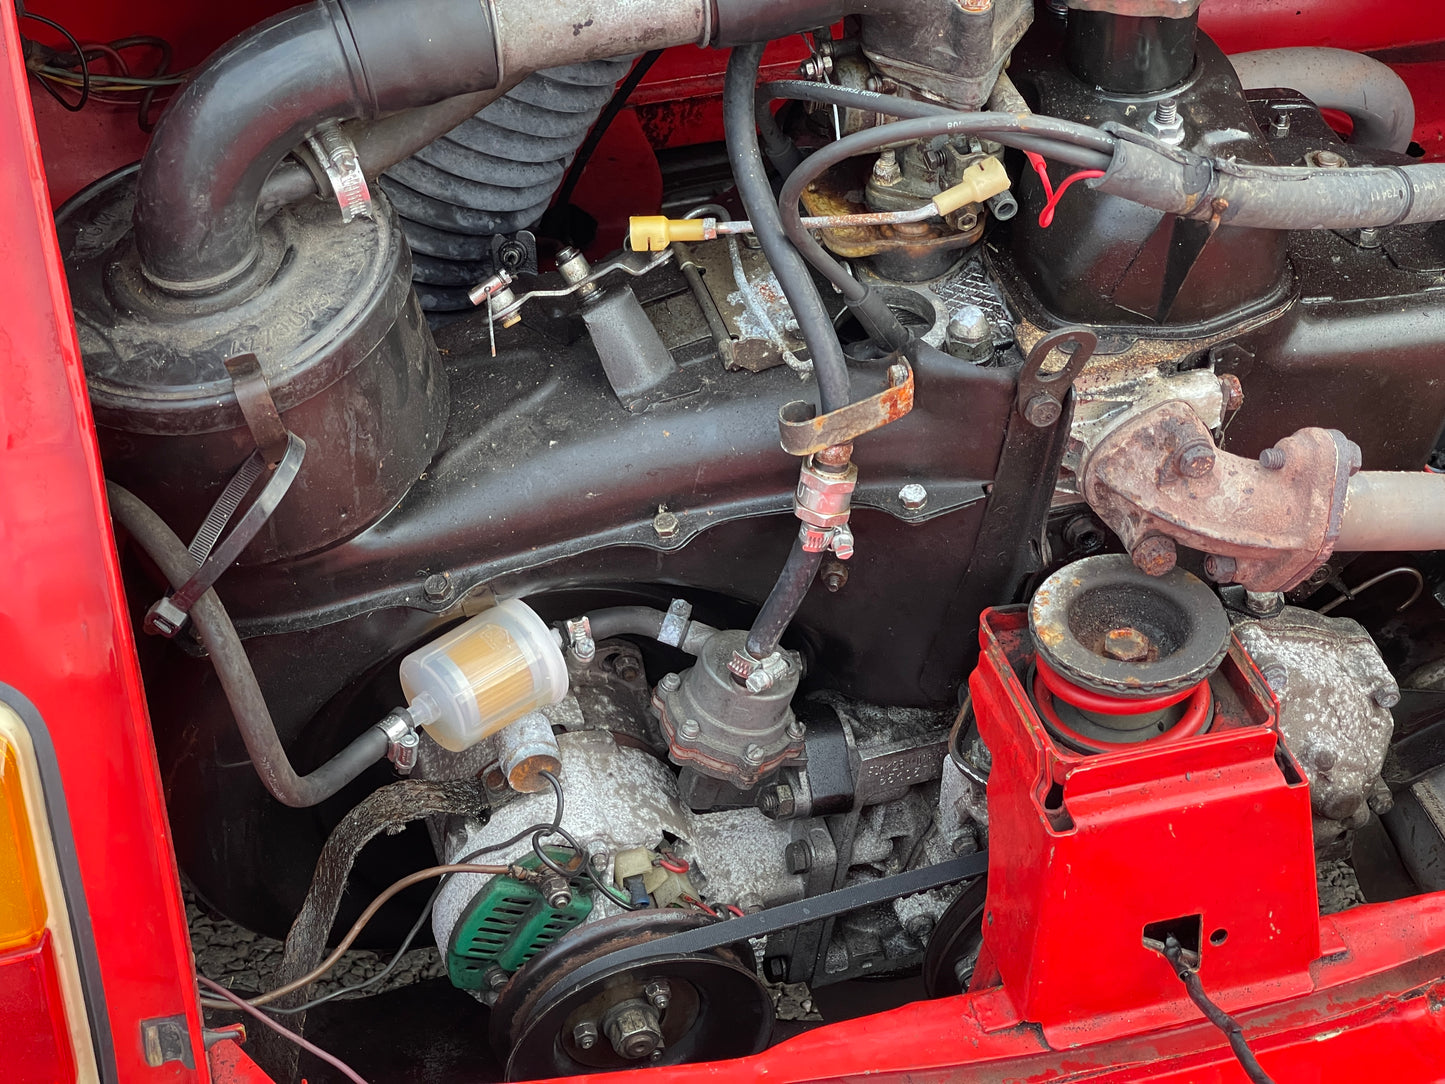 1972 Fiat 500 R - 650cc engine